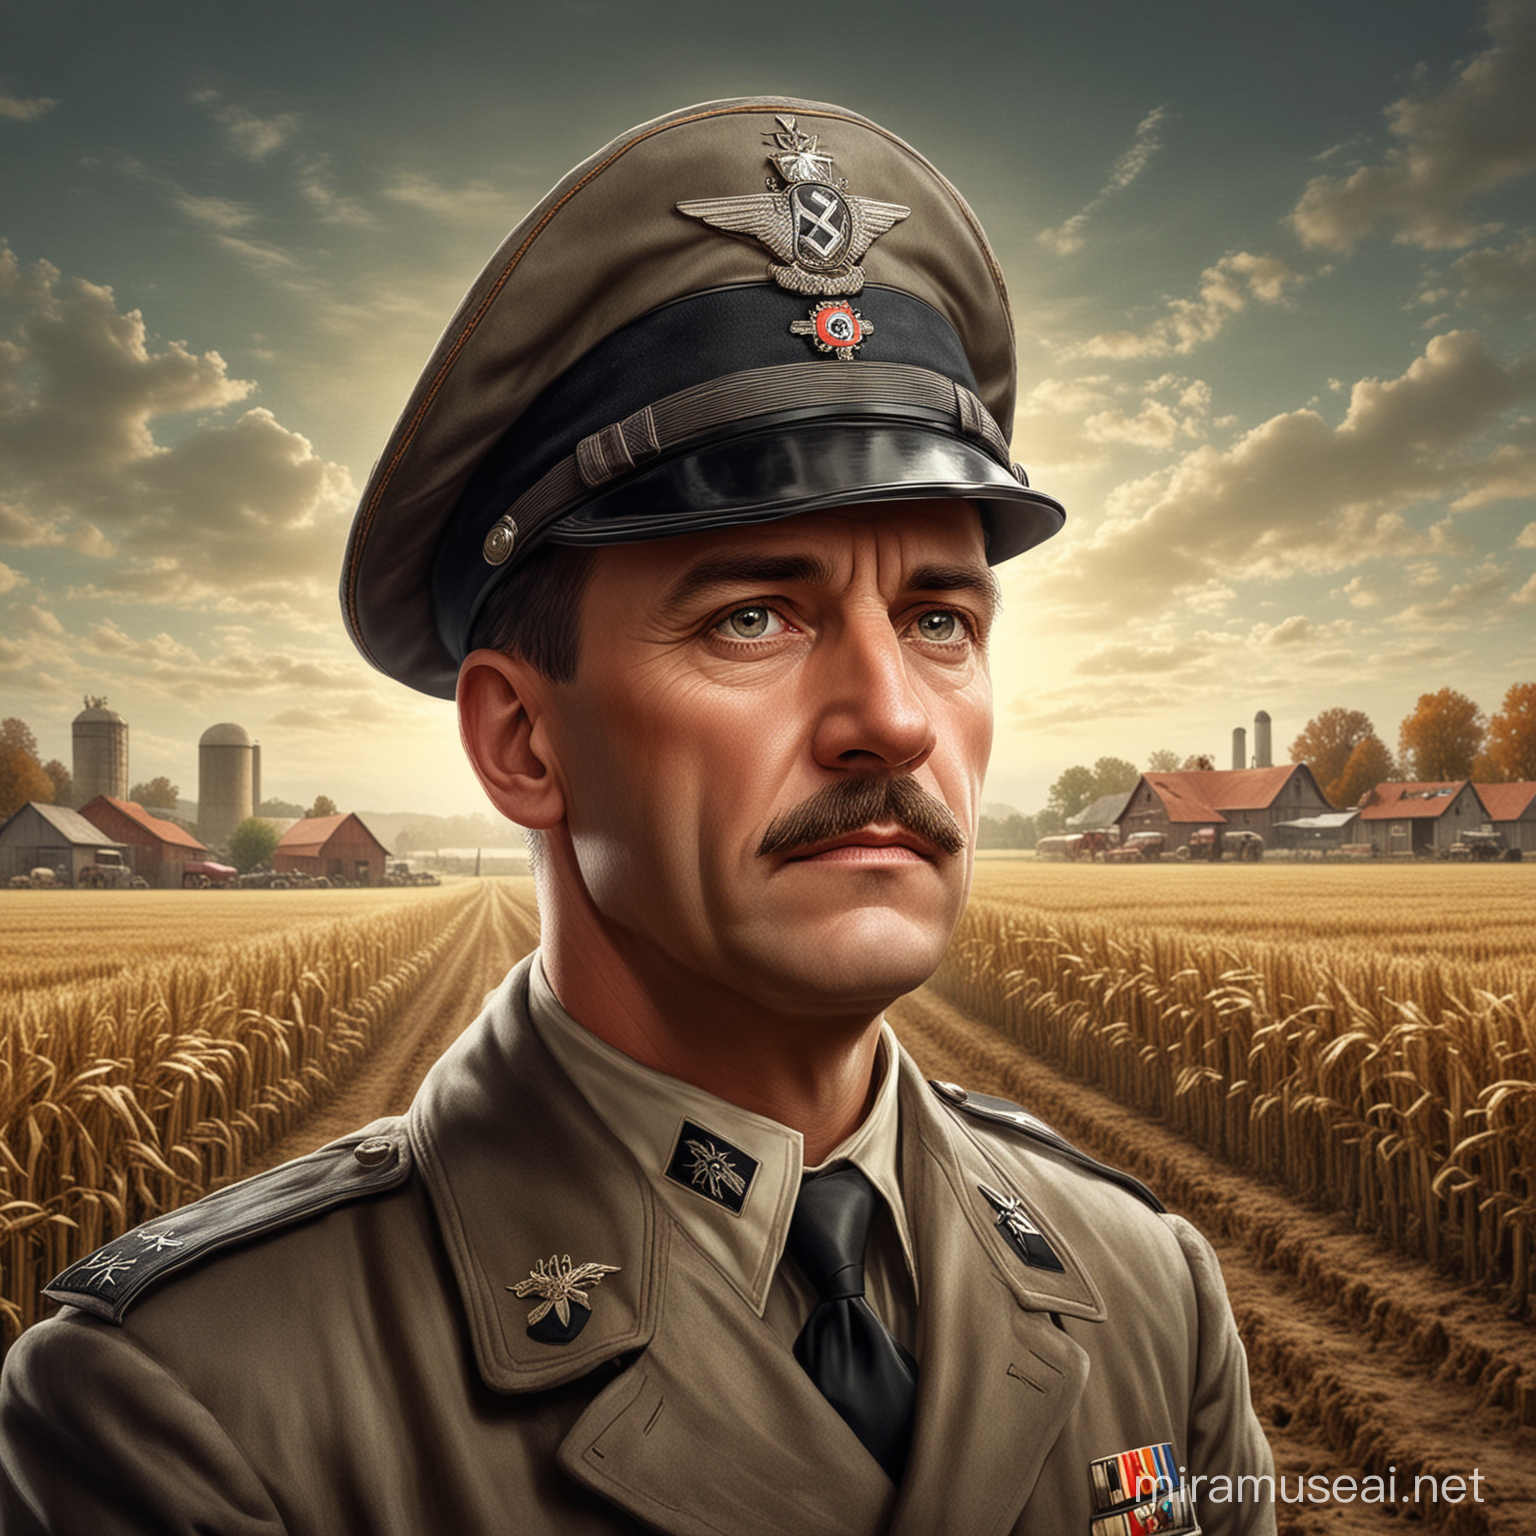 Farming führer
